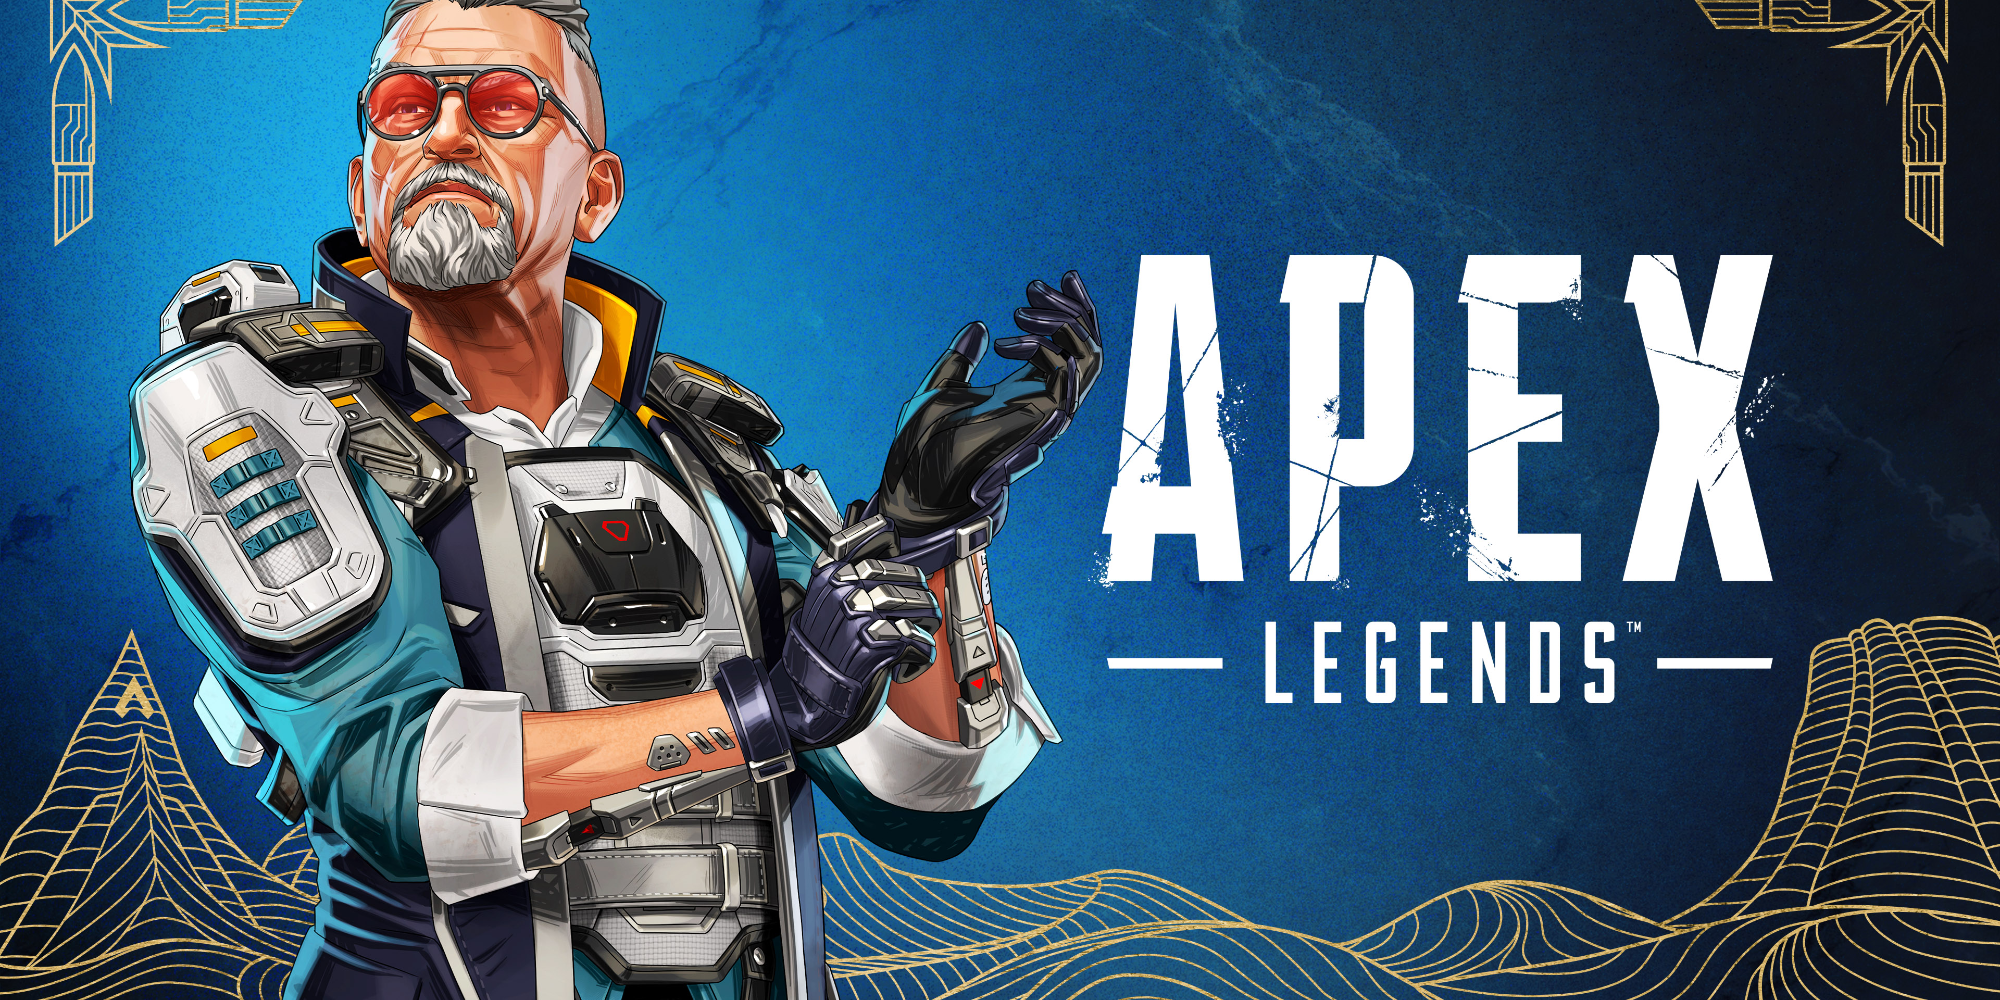 La temporada 17 de Apex Legends se vuelve balística con la adición de Major Legend